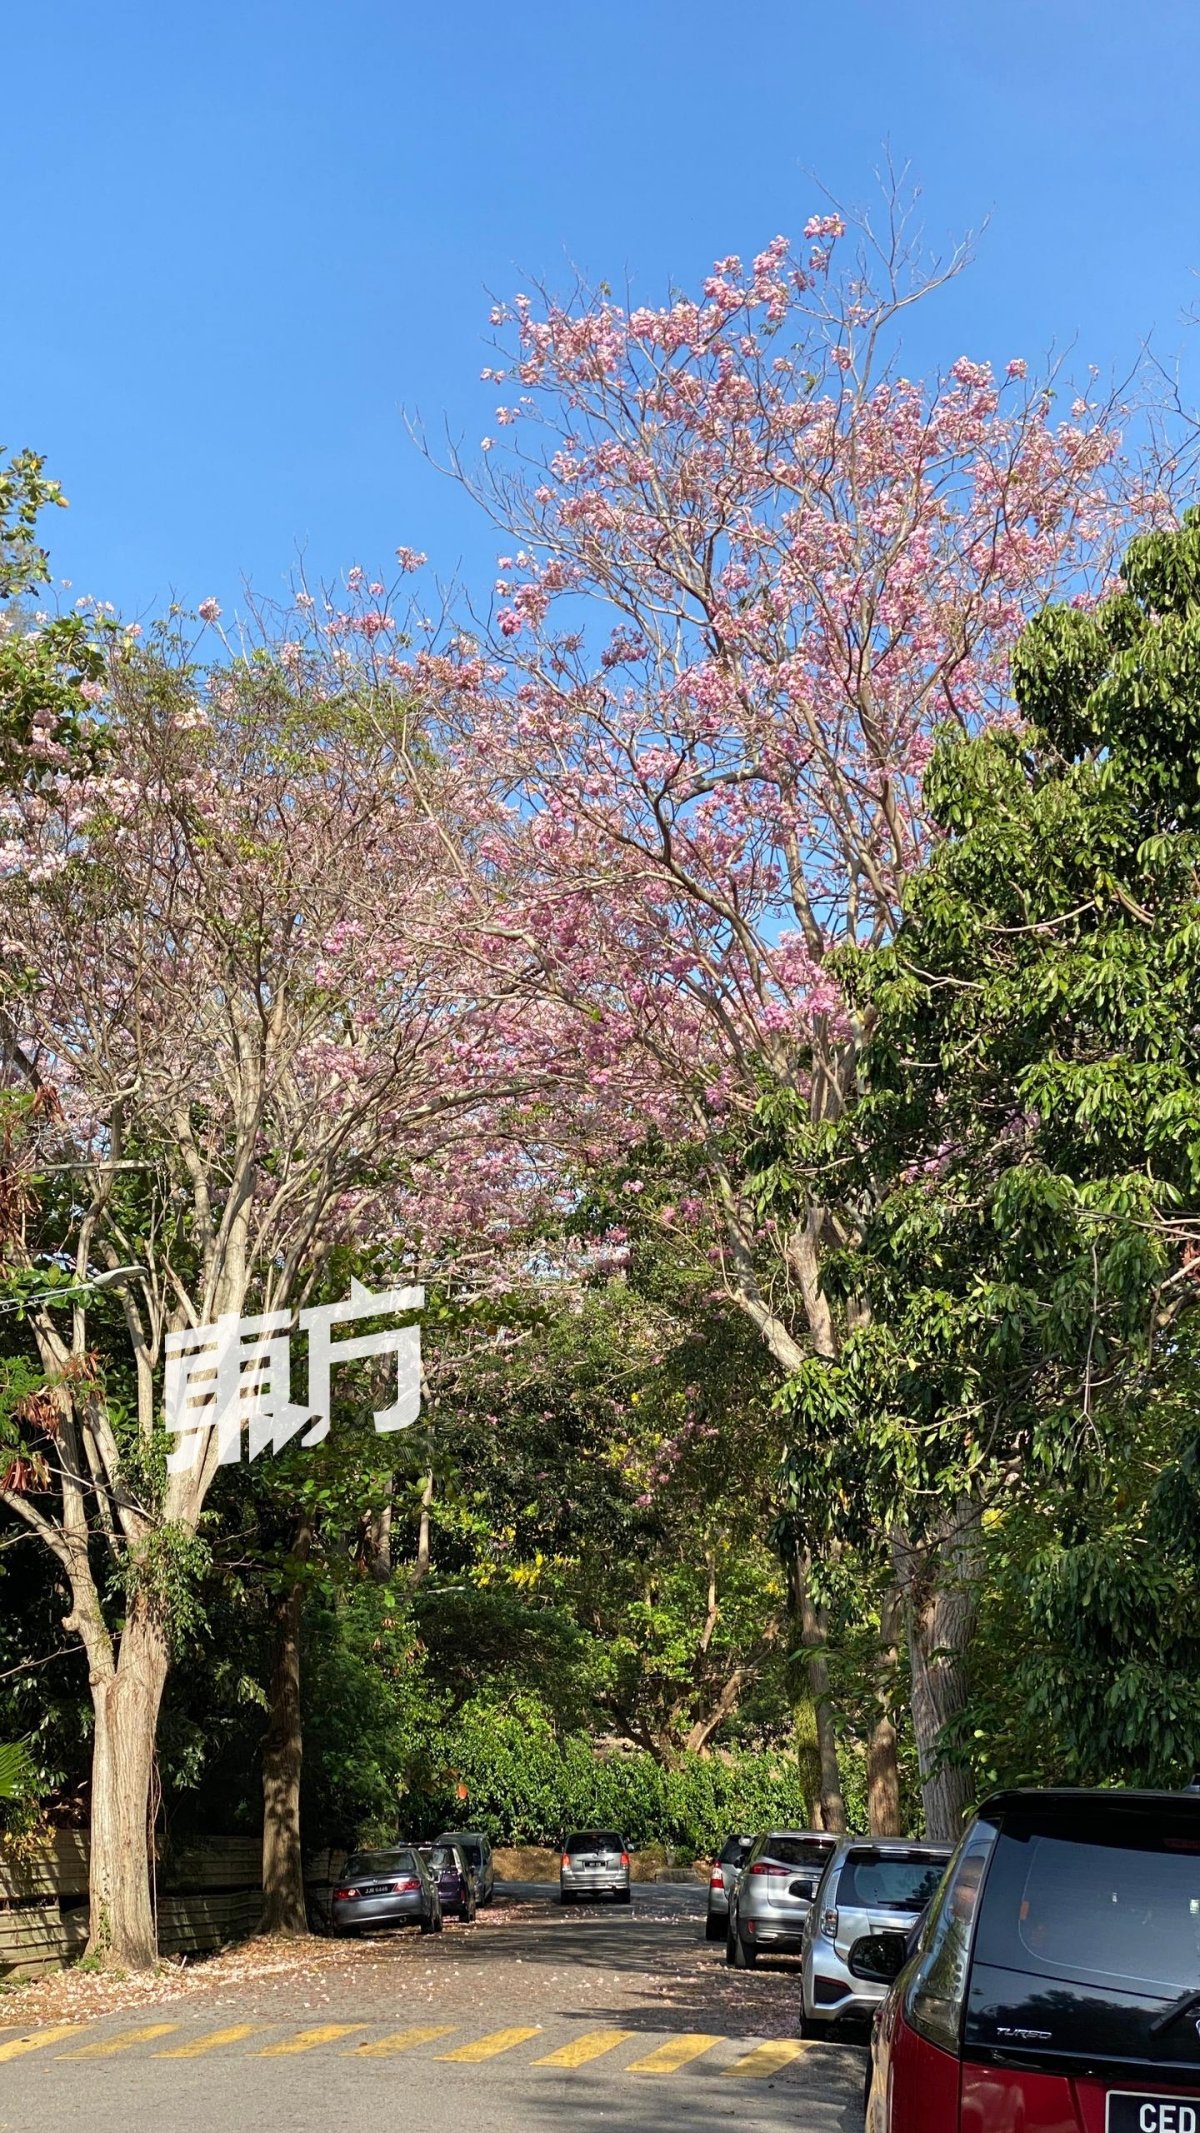 风铃木盛开的粉红色花朵与日本樱花极为相似，而获得大马樱花的美称。